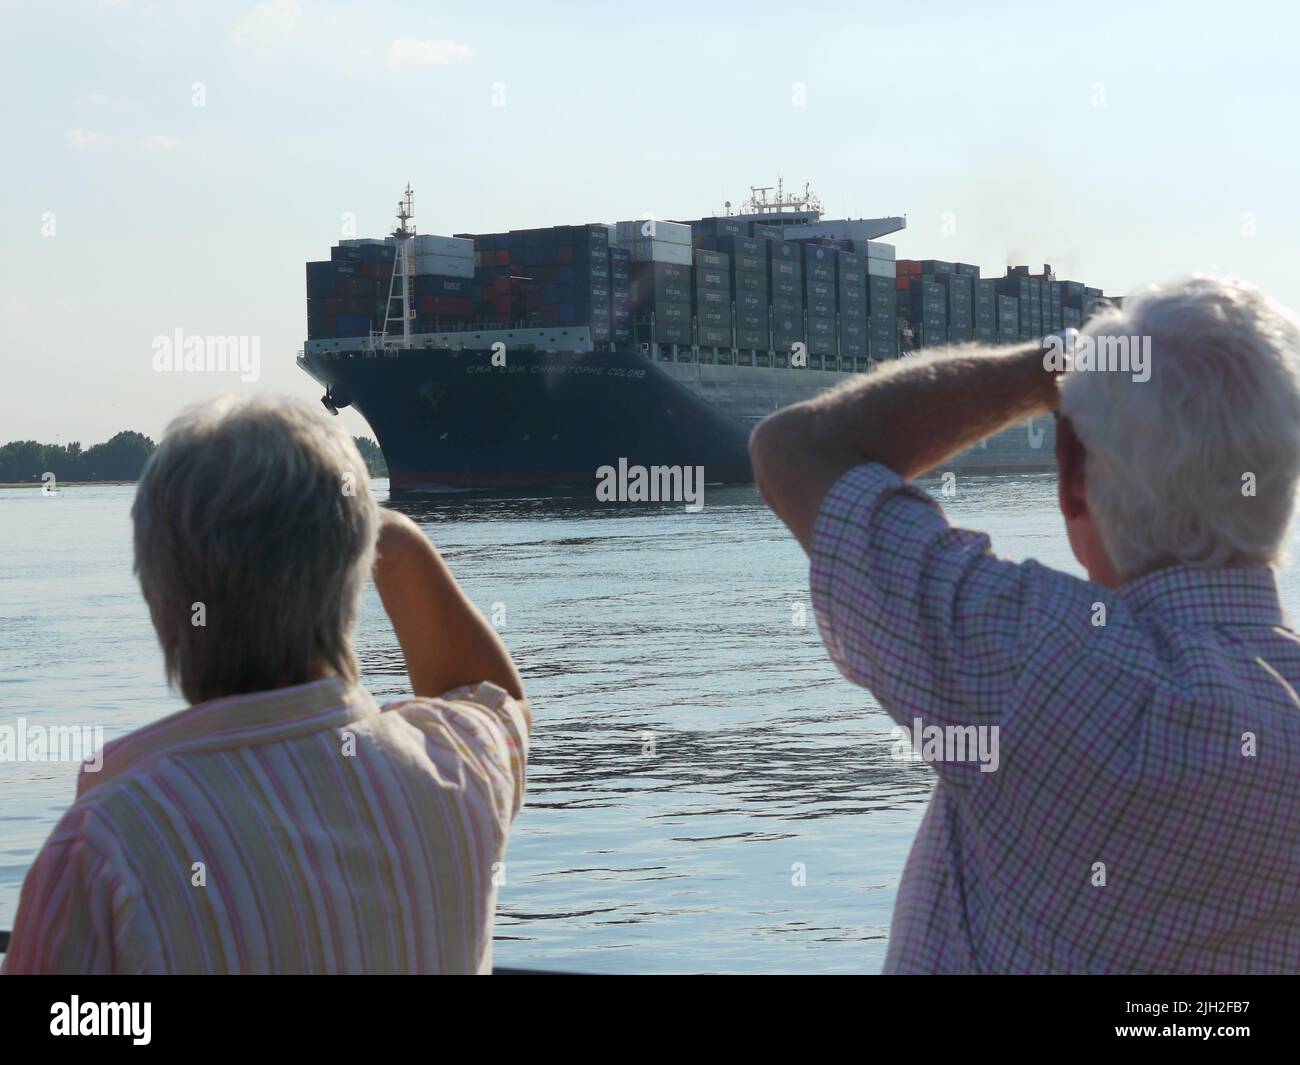 Der Container-Riese CMA CGM Christophe Colomb lief 2010 zum ersten Mal den Hamburger Hafen an. Er war seinerzeit das größte Container-Schiff und wurde von vielen Schaulustigen begrüßt. Ein Feuerlöschboot begrüßt das Schiff mit einer Wasserfontäne. Stock Photo